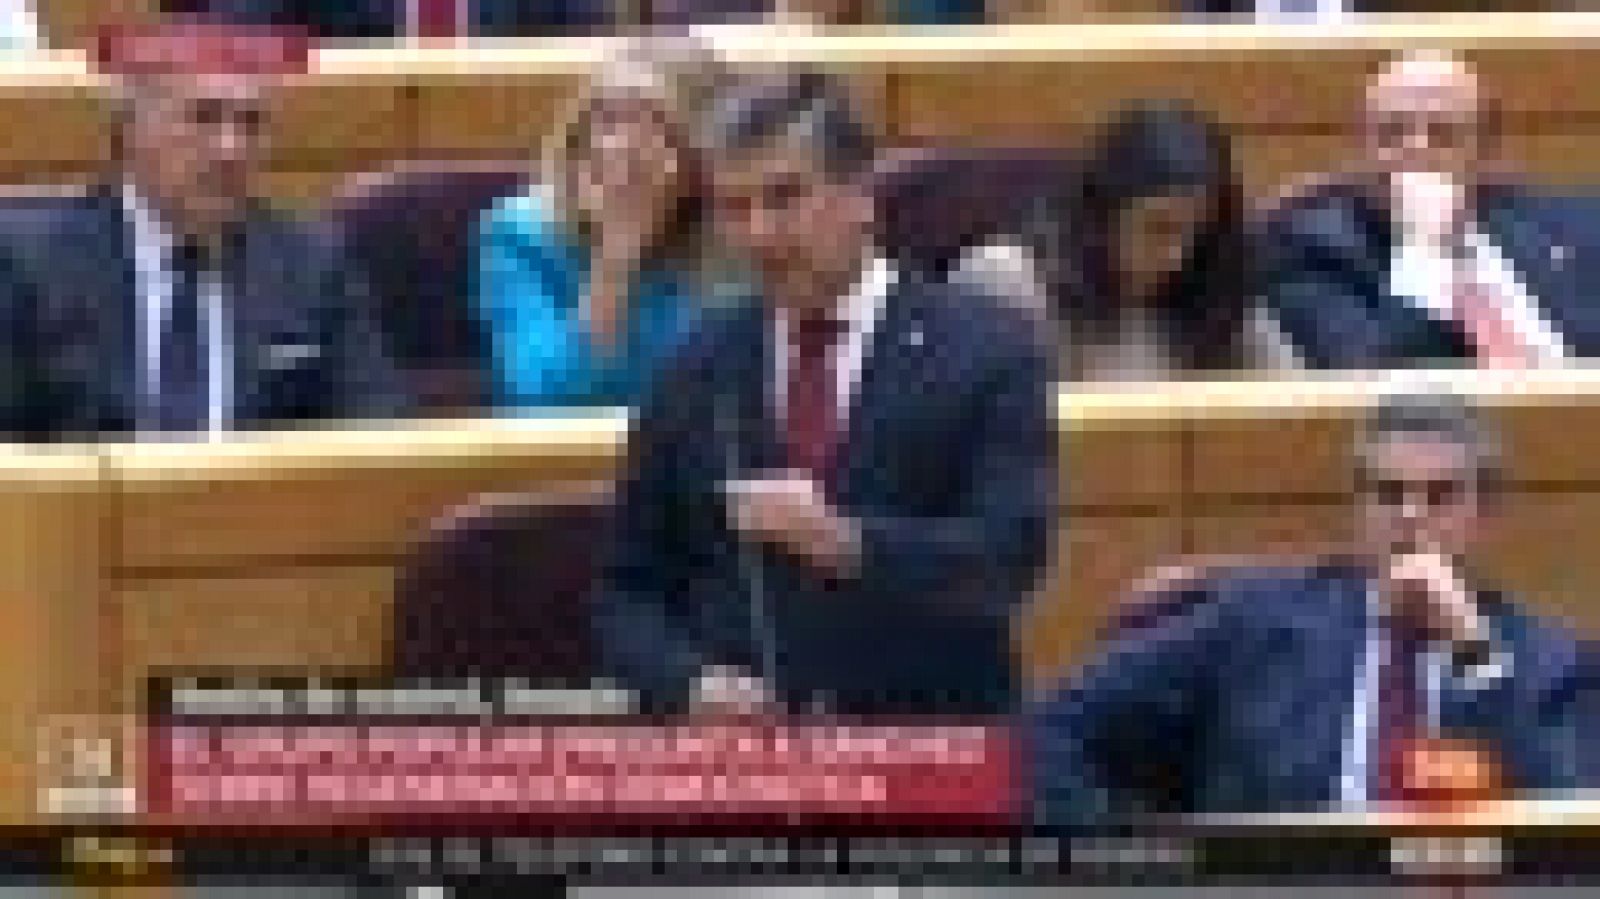 Senado | Sánchez y Cosidó se enzarzan en el Senado con duras acusaciones de corrupción - RTVE.es 